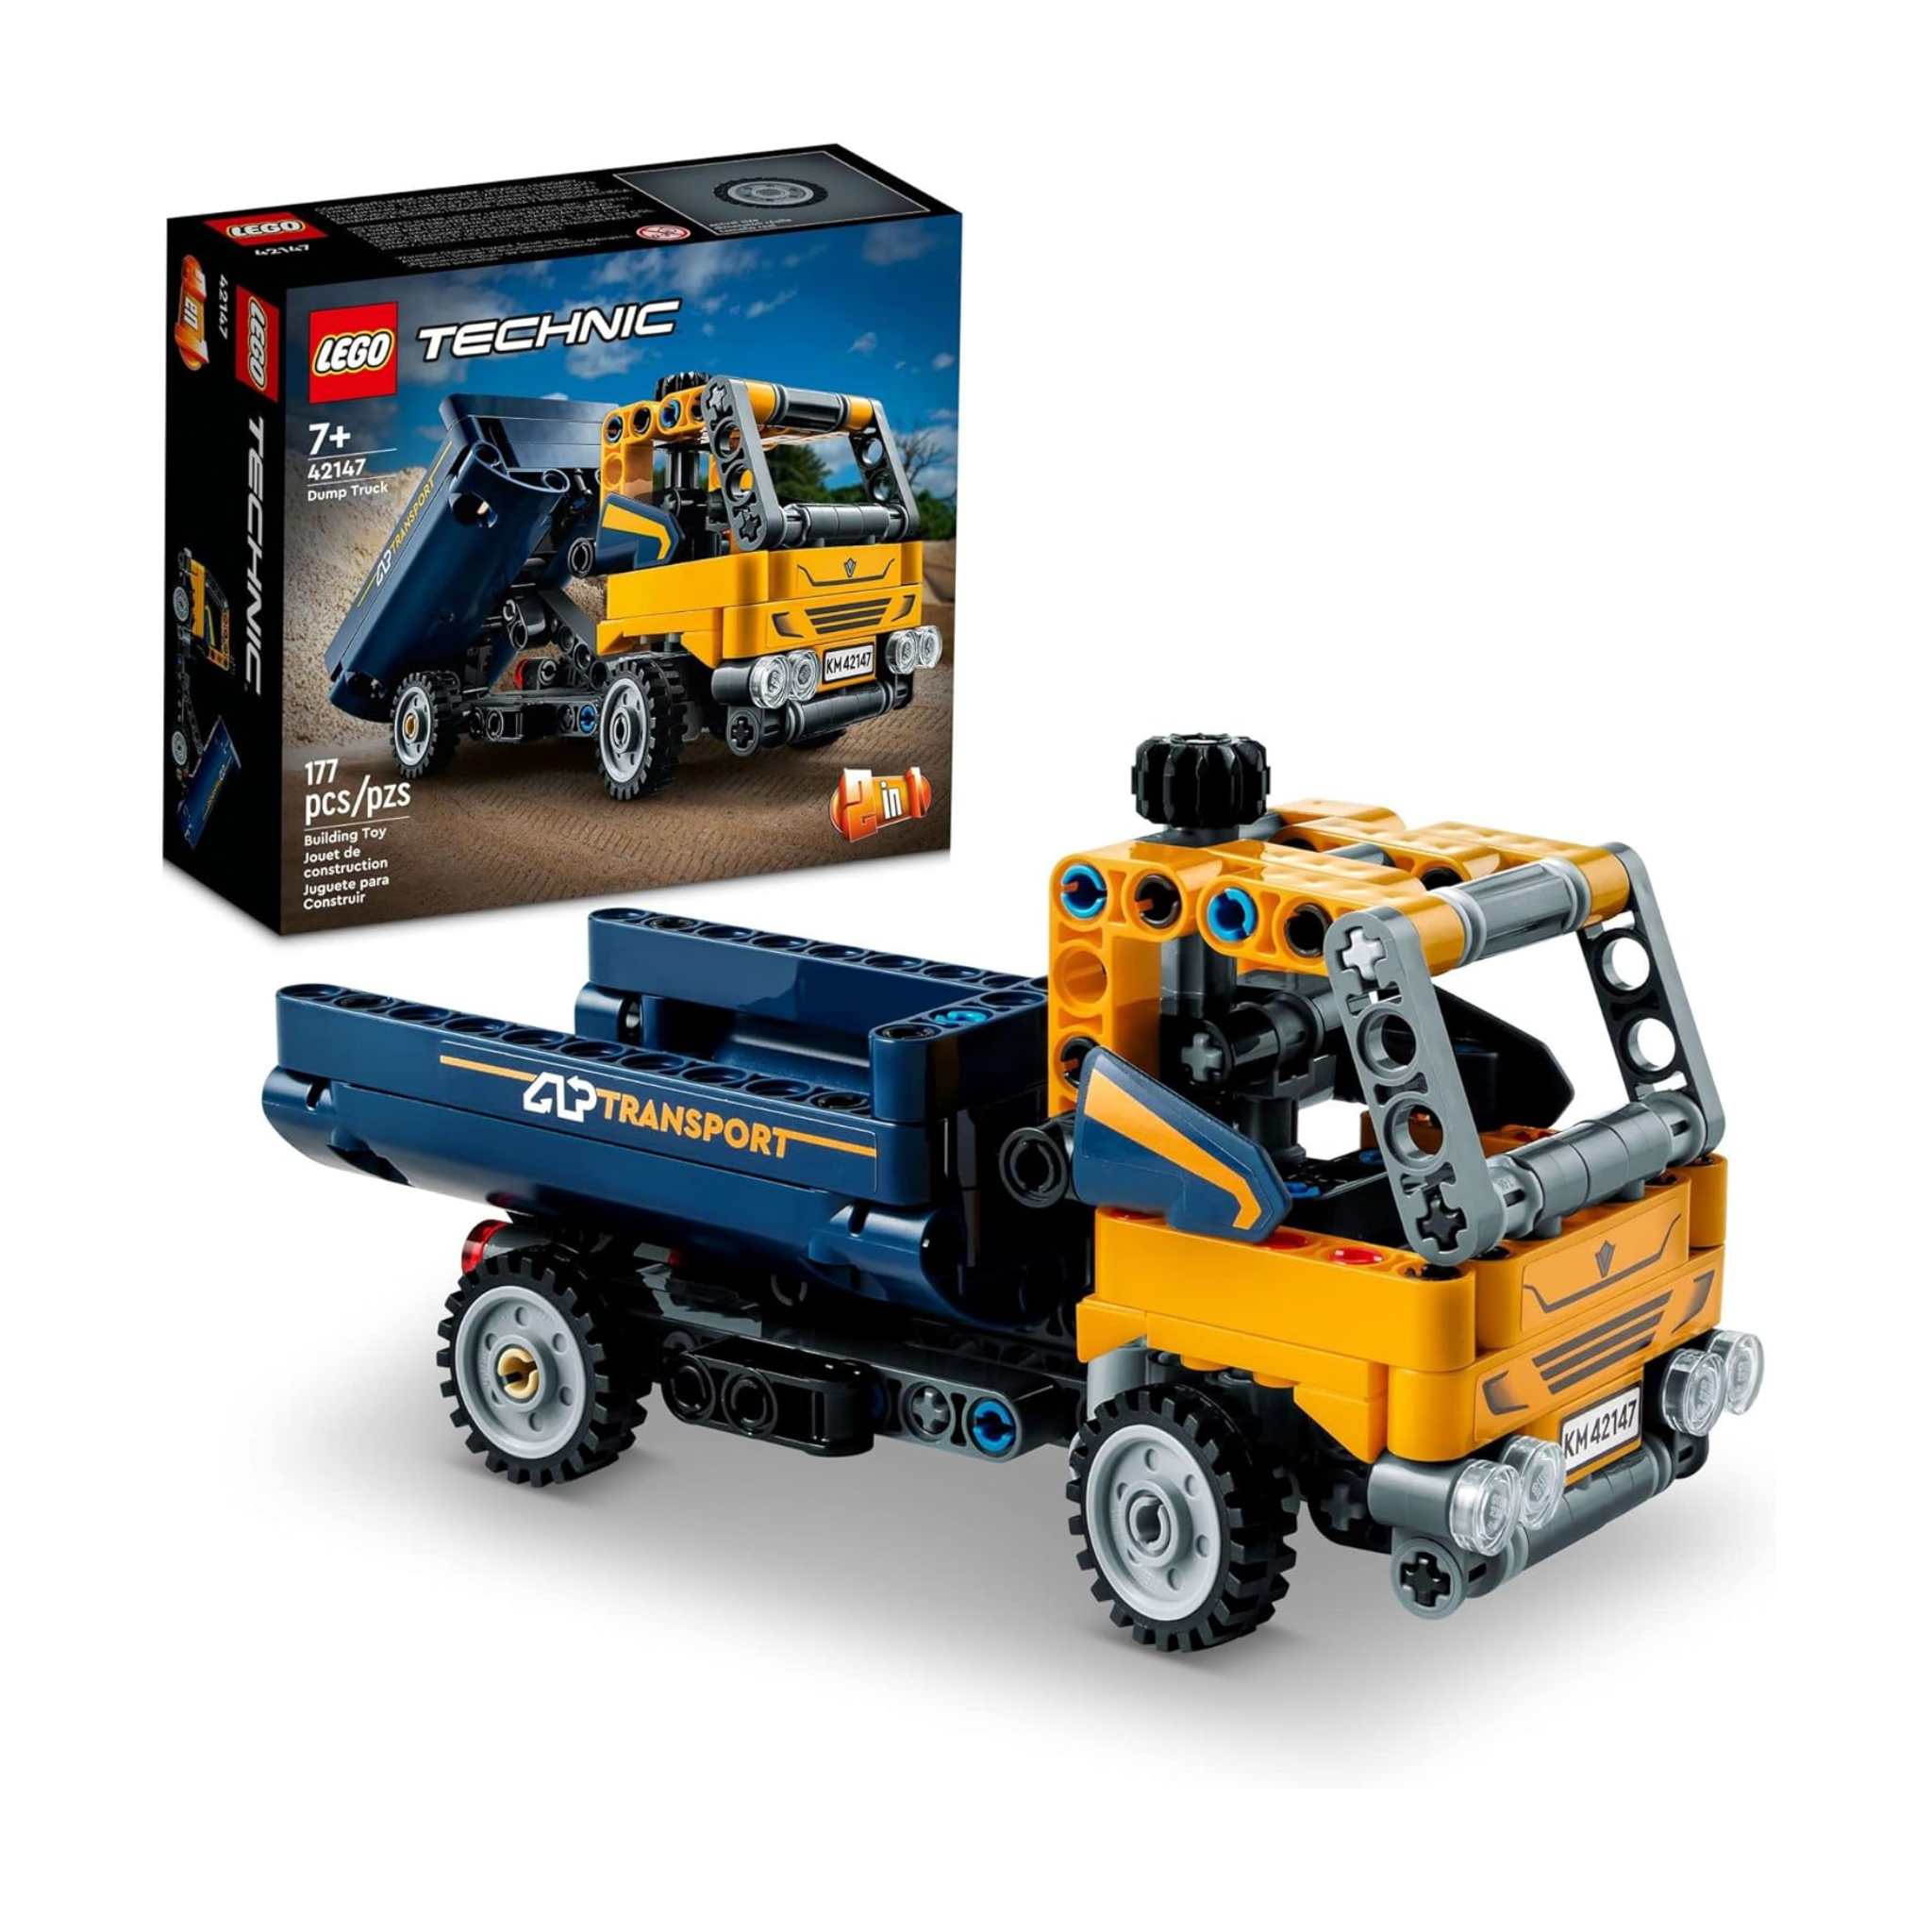 177-Piece LEGO Technic 2in1 Dump Truck & Excavator Digger Building Set